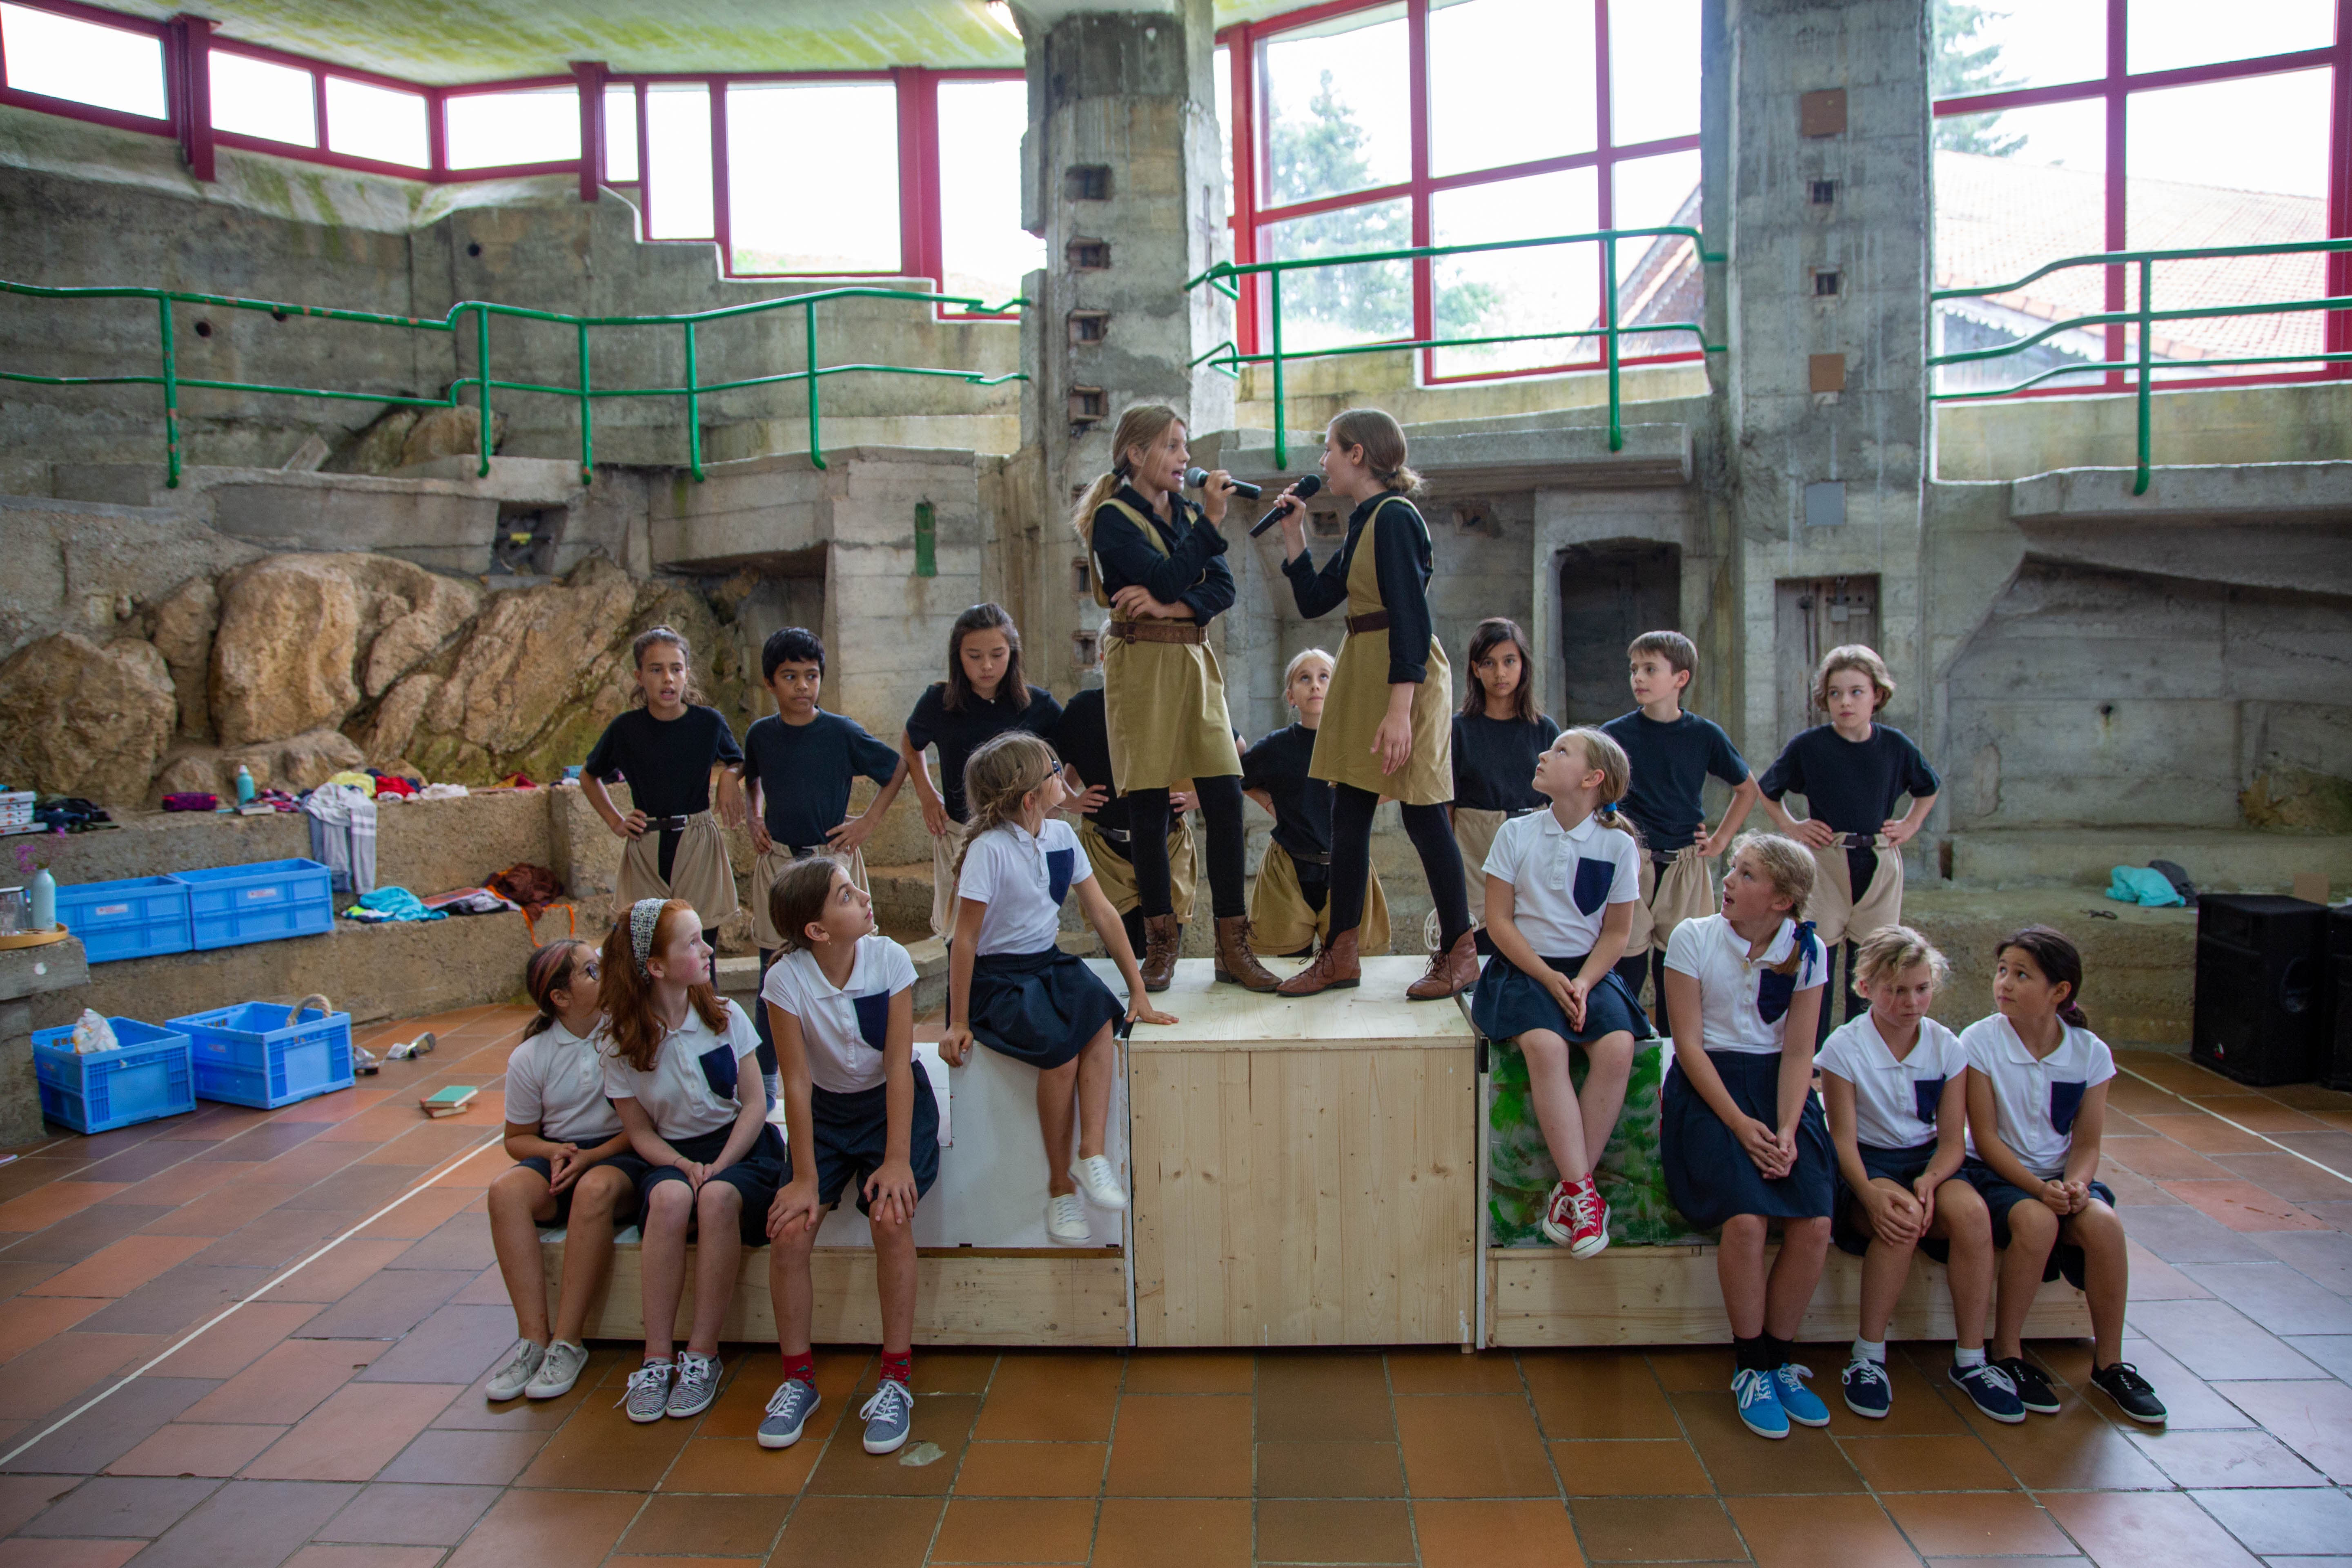 Das Esemble vom Kinder- und Jugendtheater Zug proben fleissig für das Stück «Mathilda». (Bild: Kinder- und Jugendtheater Zug, Lajoux, 13. August 2019)